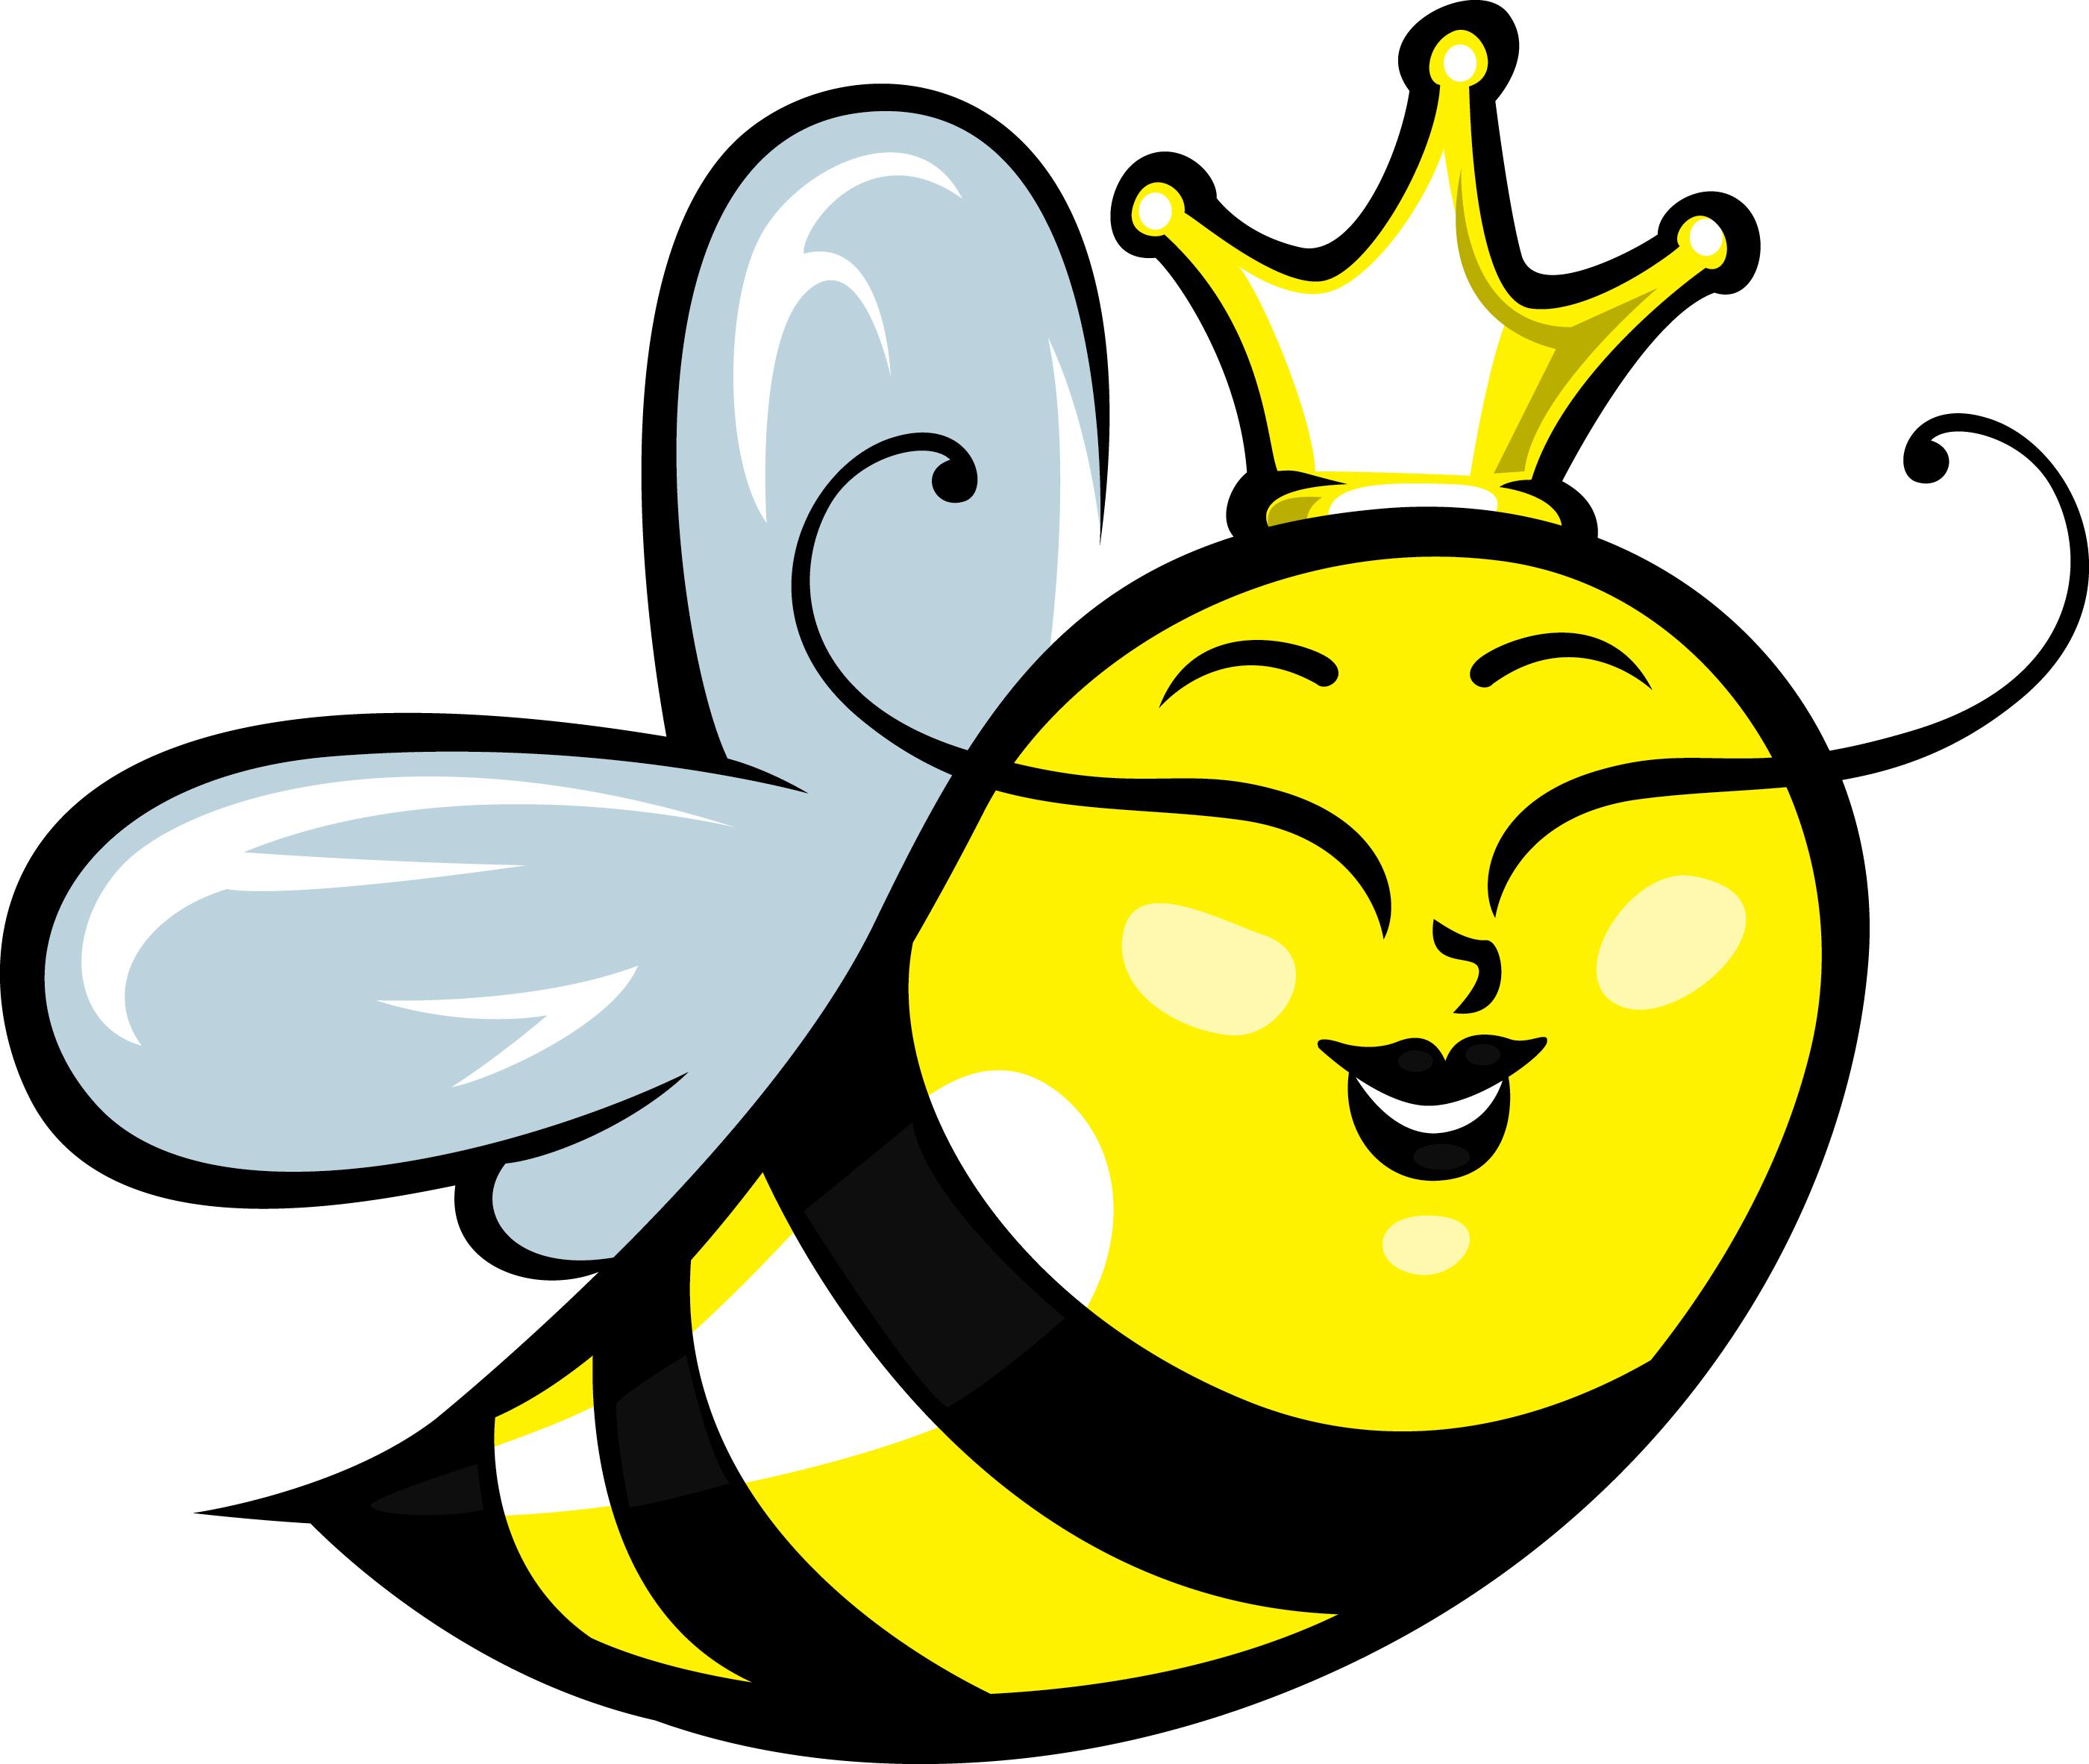 Queen bee clipart.